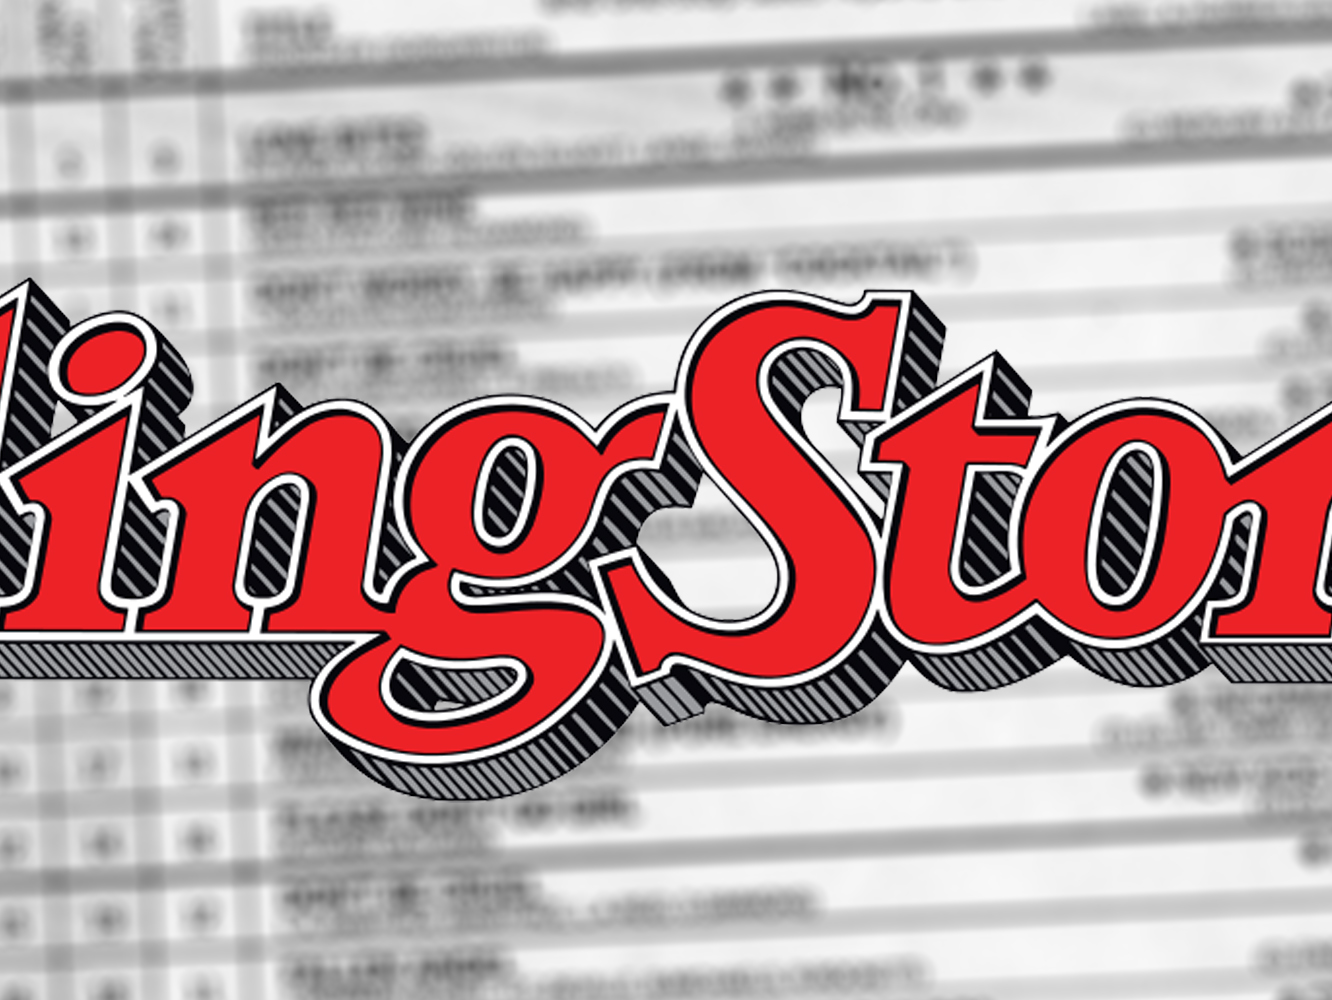 Rolling Stone lanzará su propia lista americana y Billboard mueve ficha para no perder peso